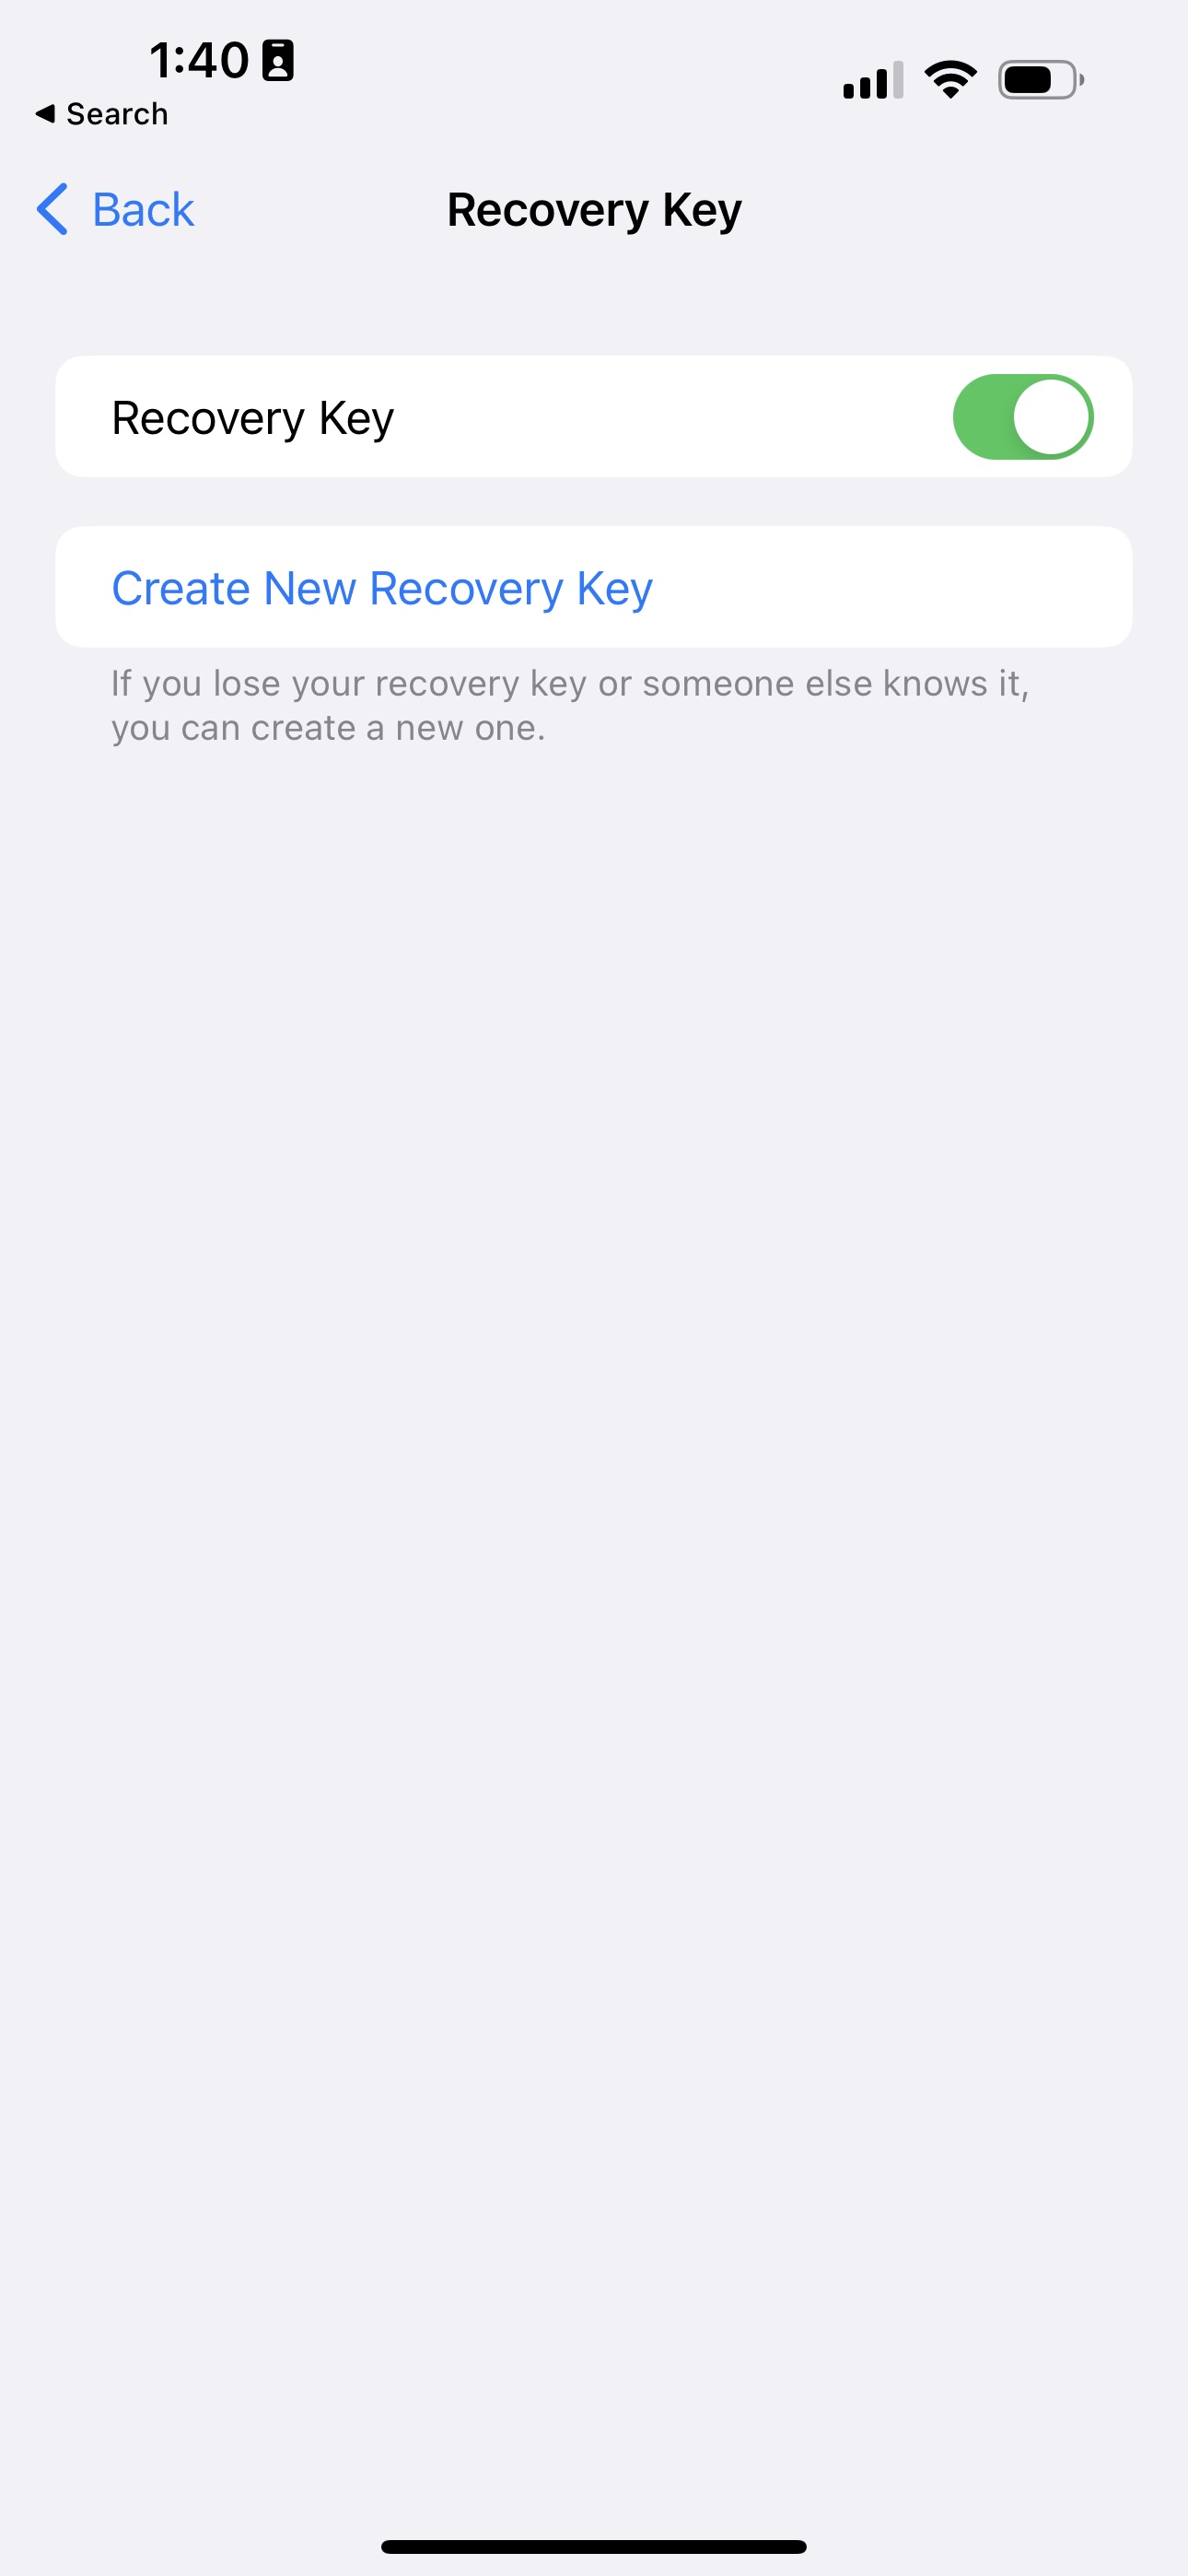 Erweiterter Datenschutz auf einem iPhone mit iOS 16.2 einrichten.